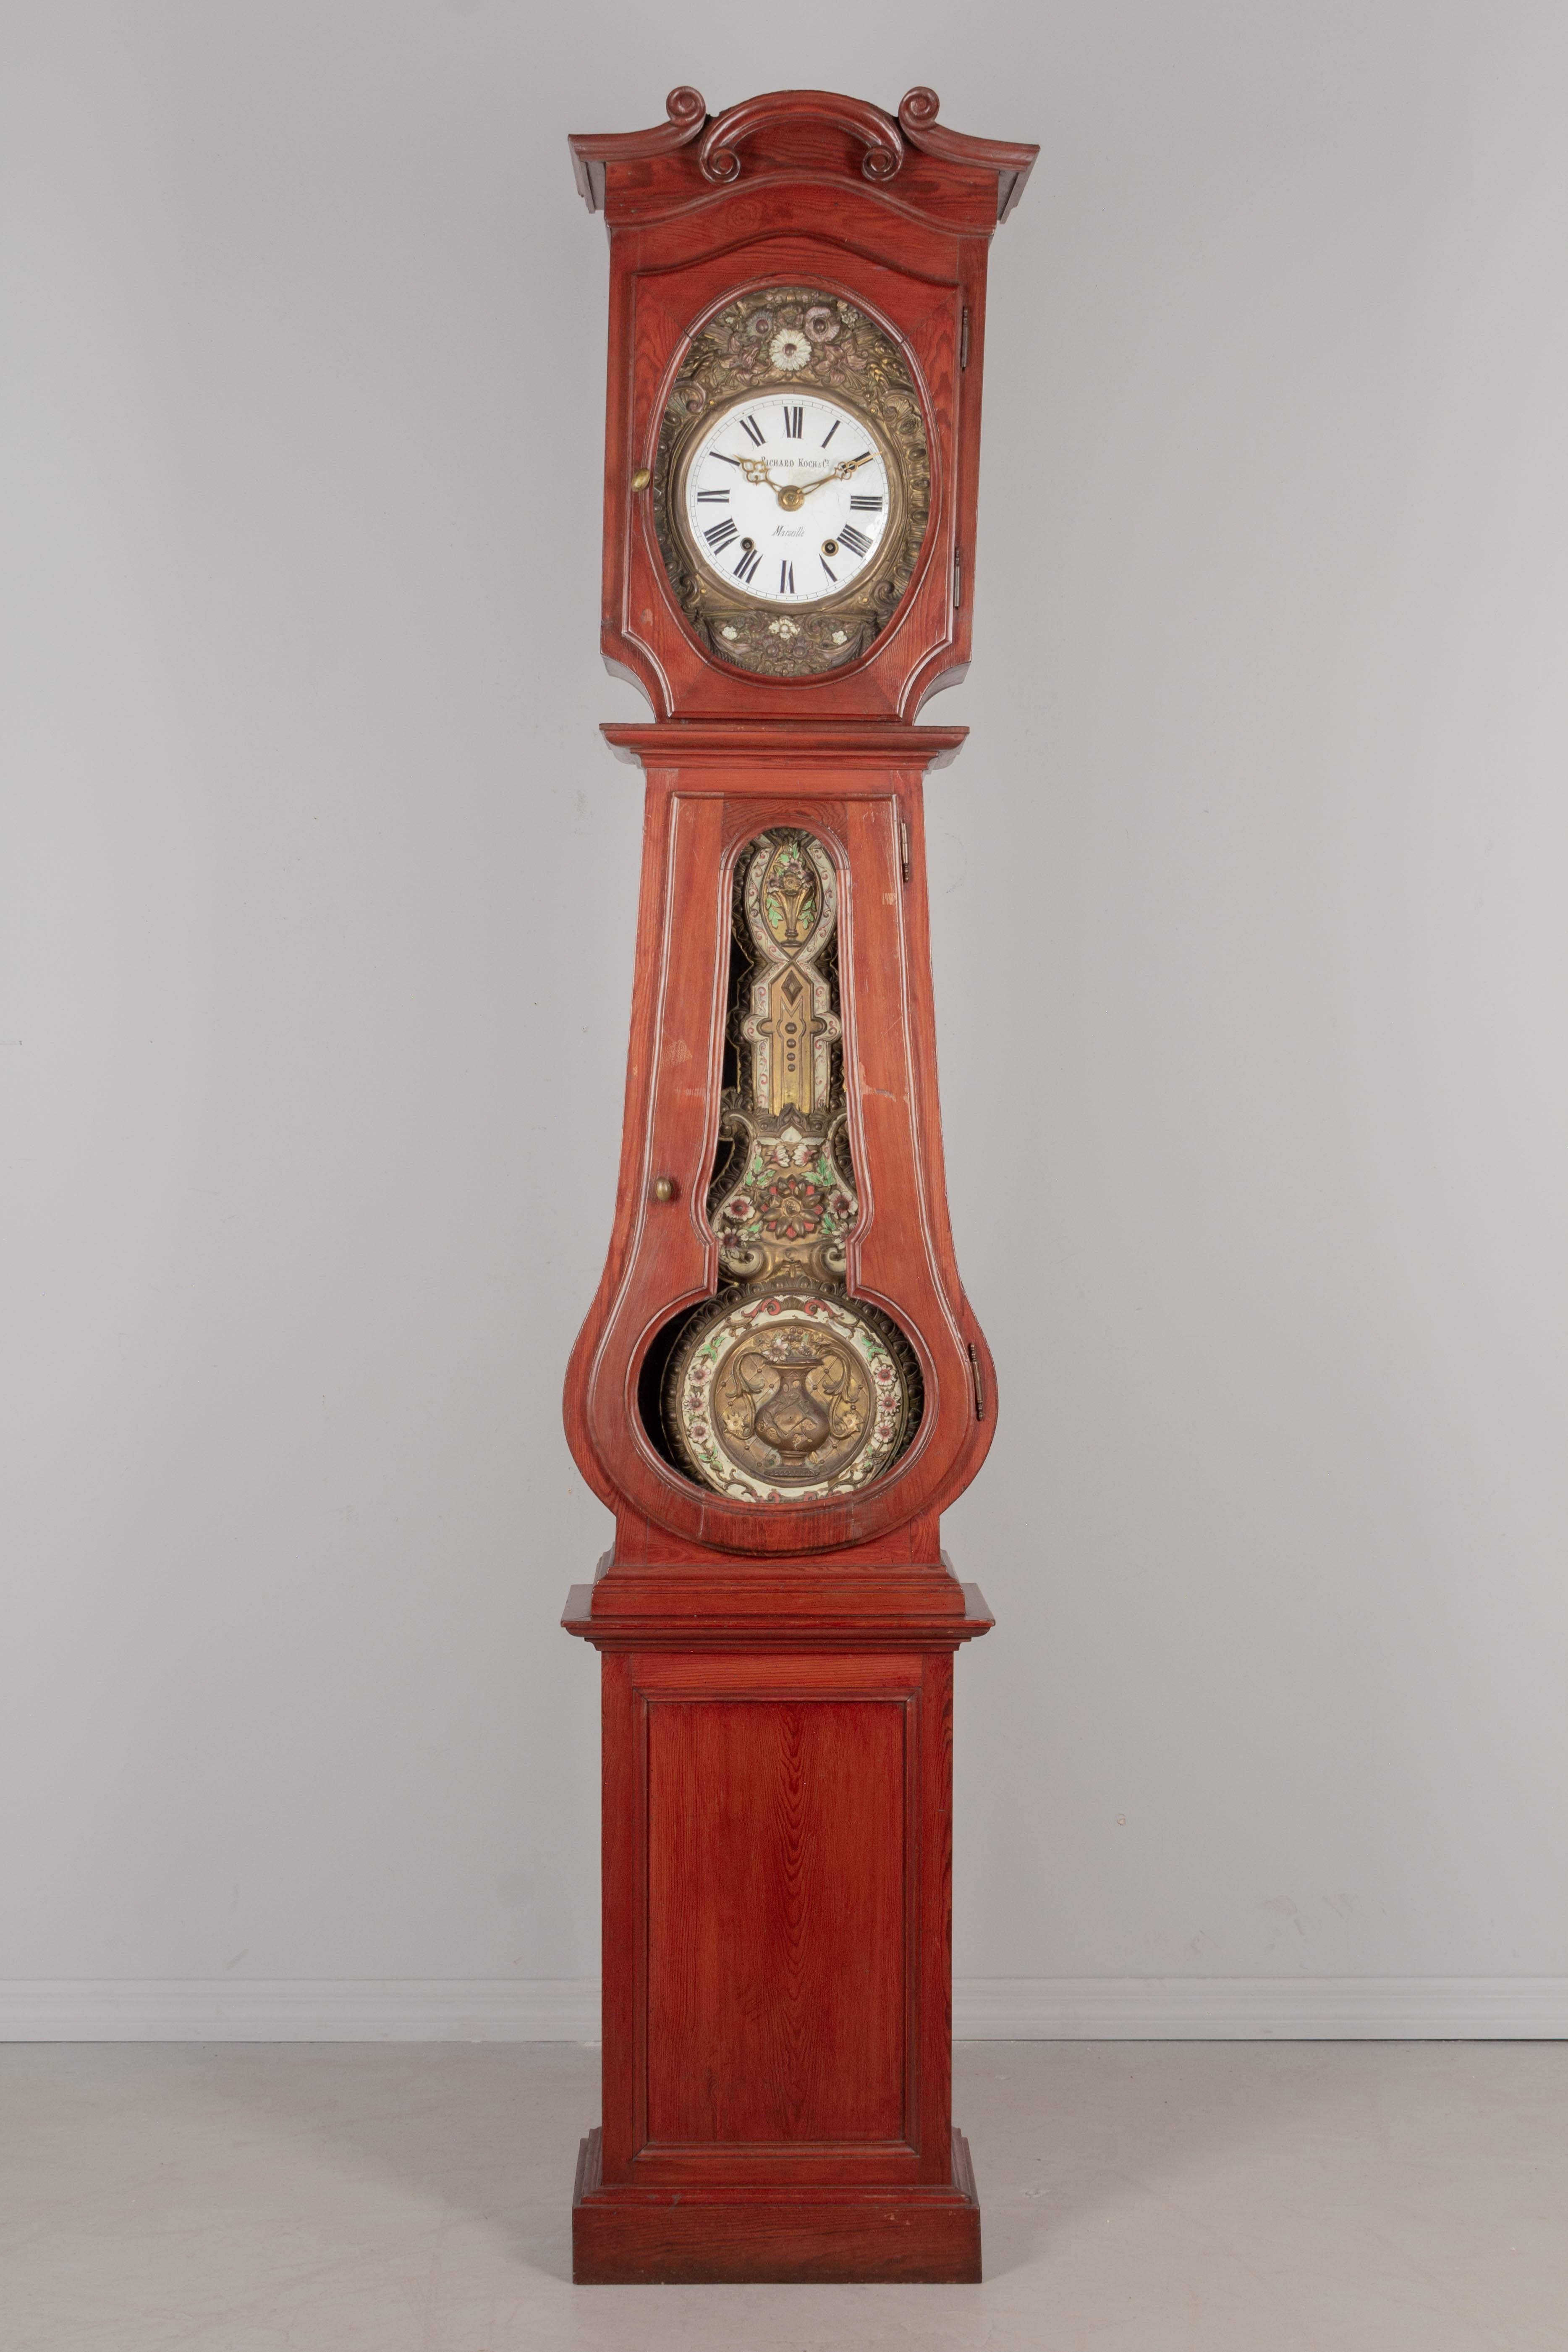 Eine französische Standuhr aus dem 19. Jahrhundert mit Kieferngehäuse und geprägtem Messingpendel. Das Gehäuse stammt aus der Normandie (ca. 1900-1920) und das Uhrwerk aus Marseille (ca. 1880-1900). Das Sieben-Tage-Morbier-Uhrwerk wurde